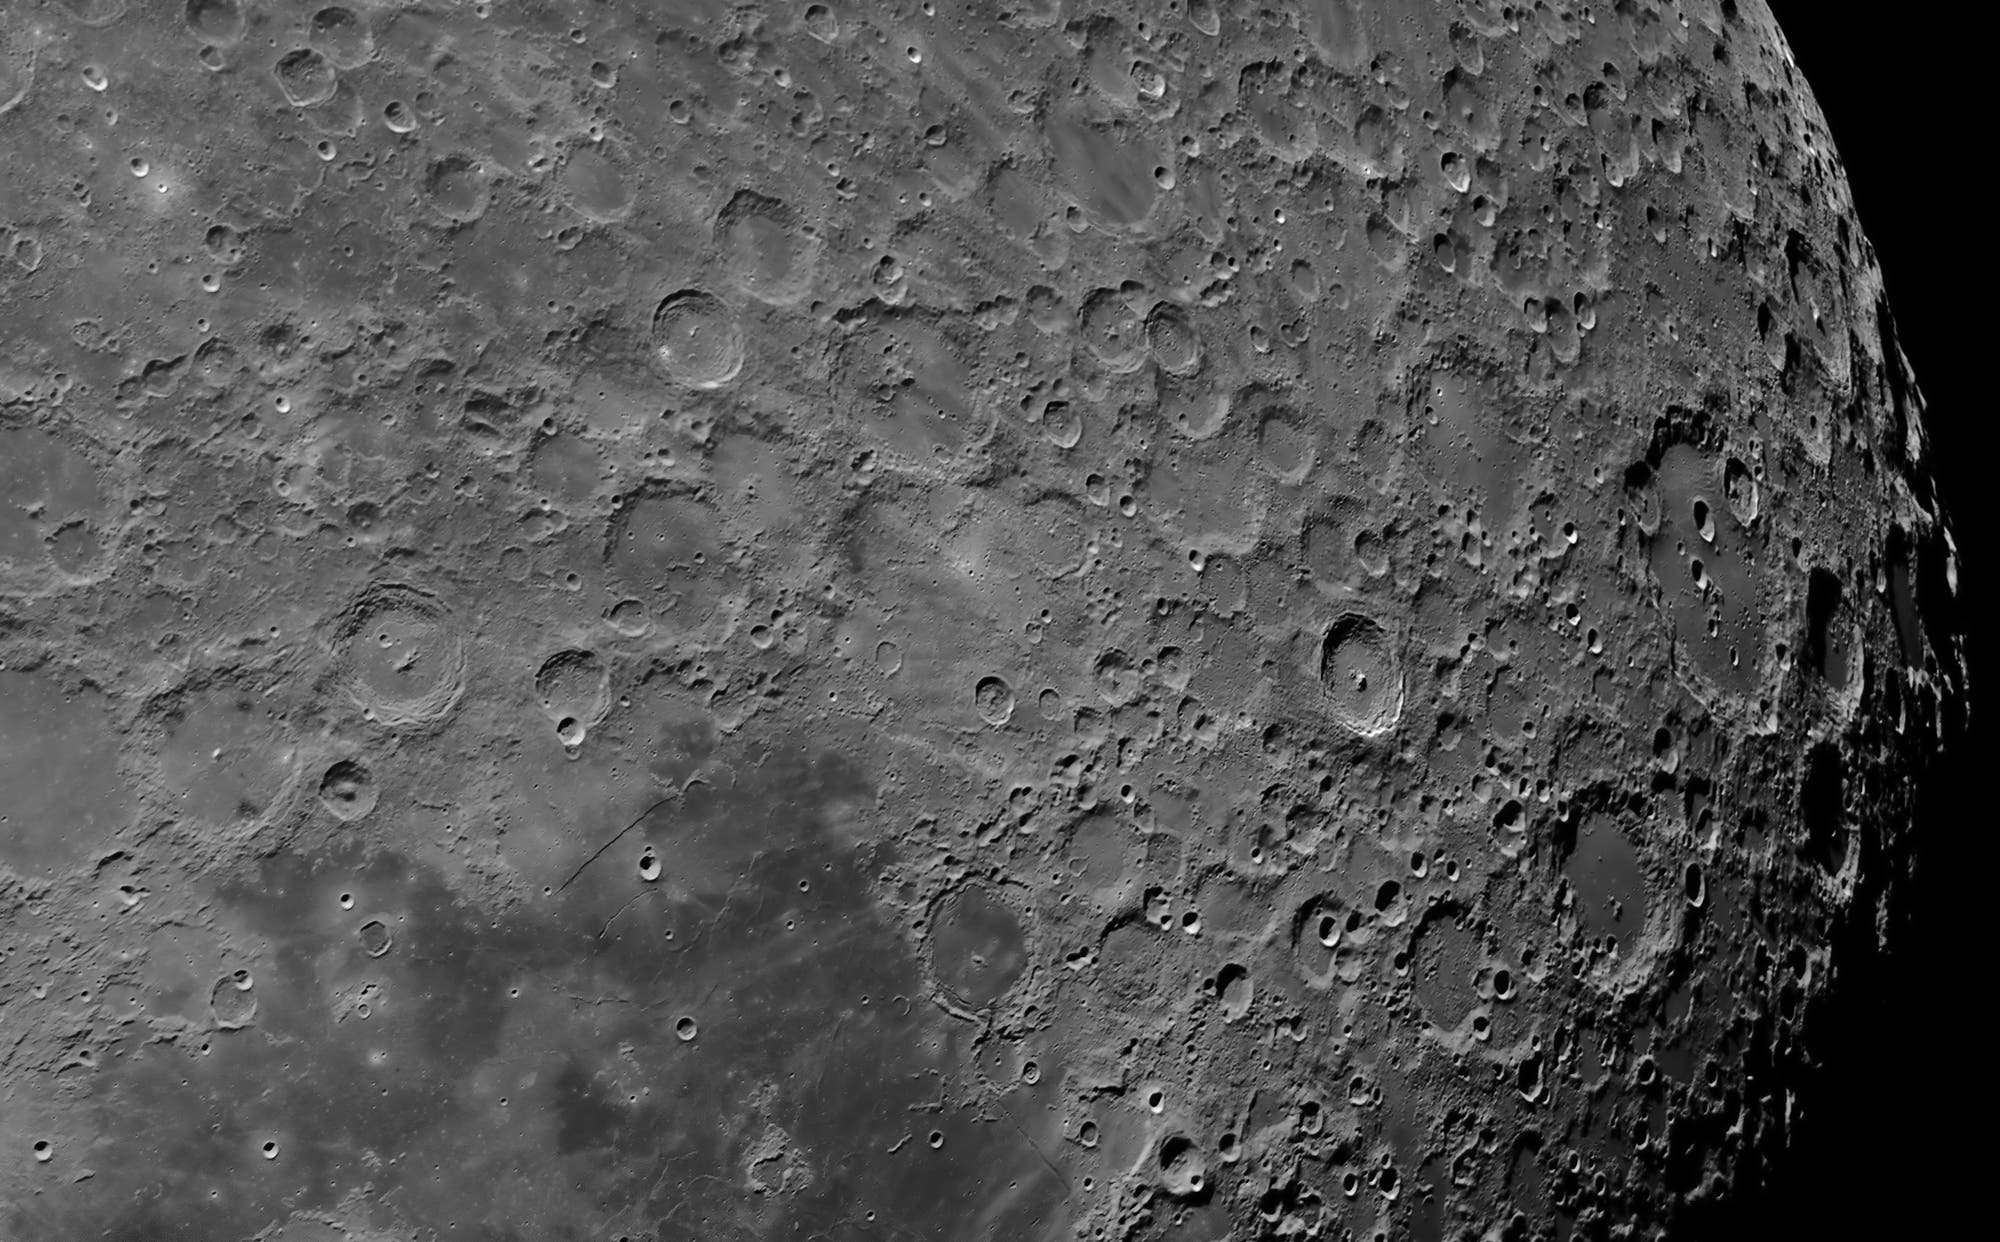 Mond von Clavius bis Ptolomaeus